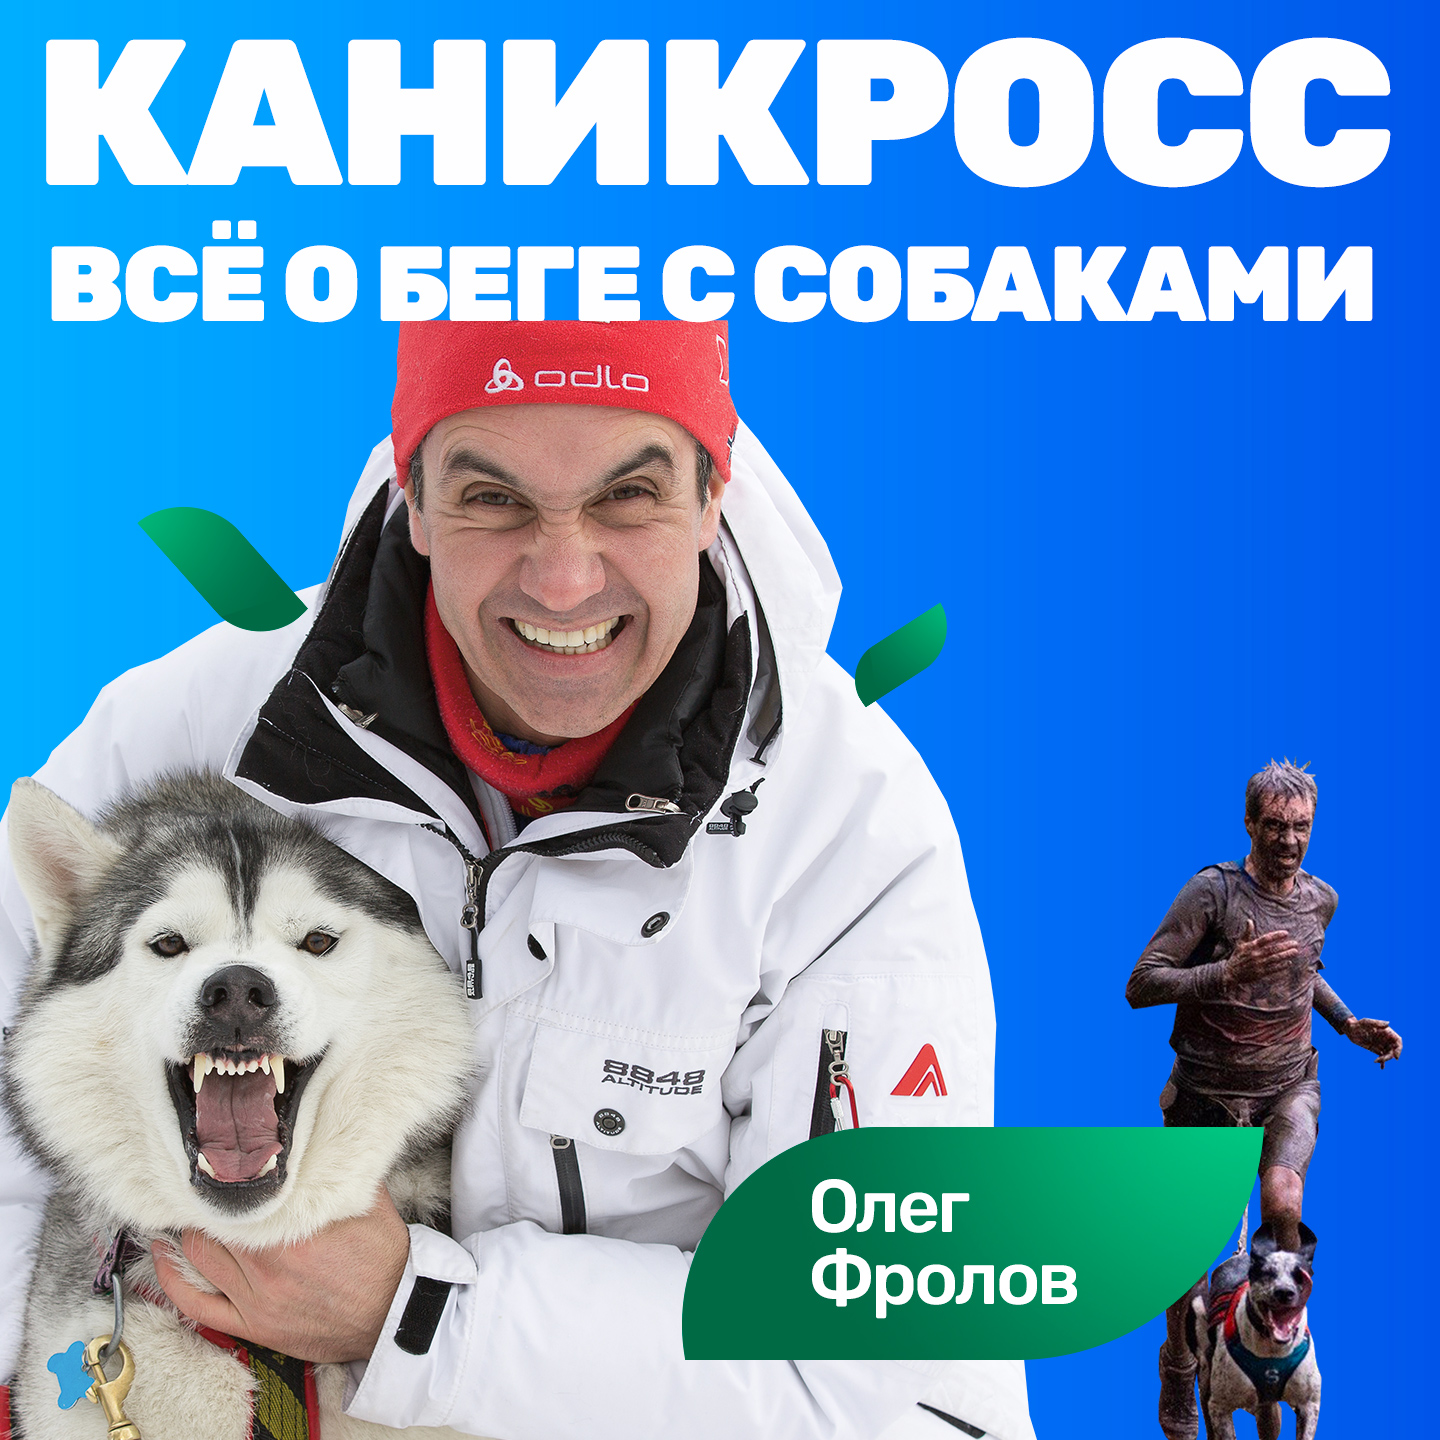 #S04E14 Олег Фролов: бег с собакой со скоростью 22 км/ч реально (каникросс)